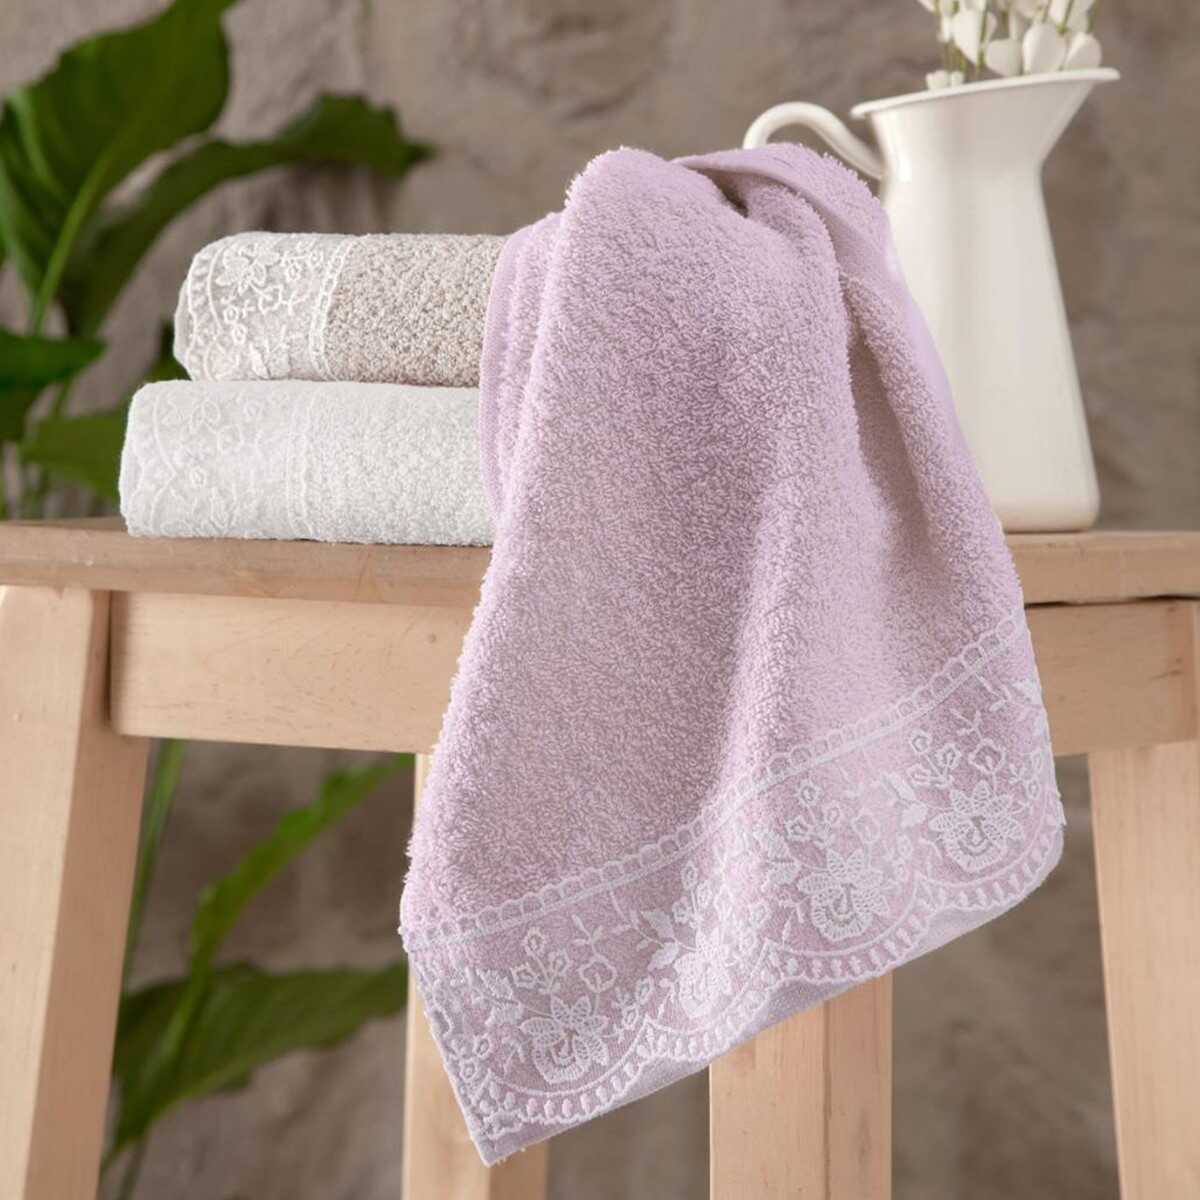 Maxstyle Violet Cotton Laced 3 Piece Kitchen Towel 30x50 cm